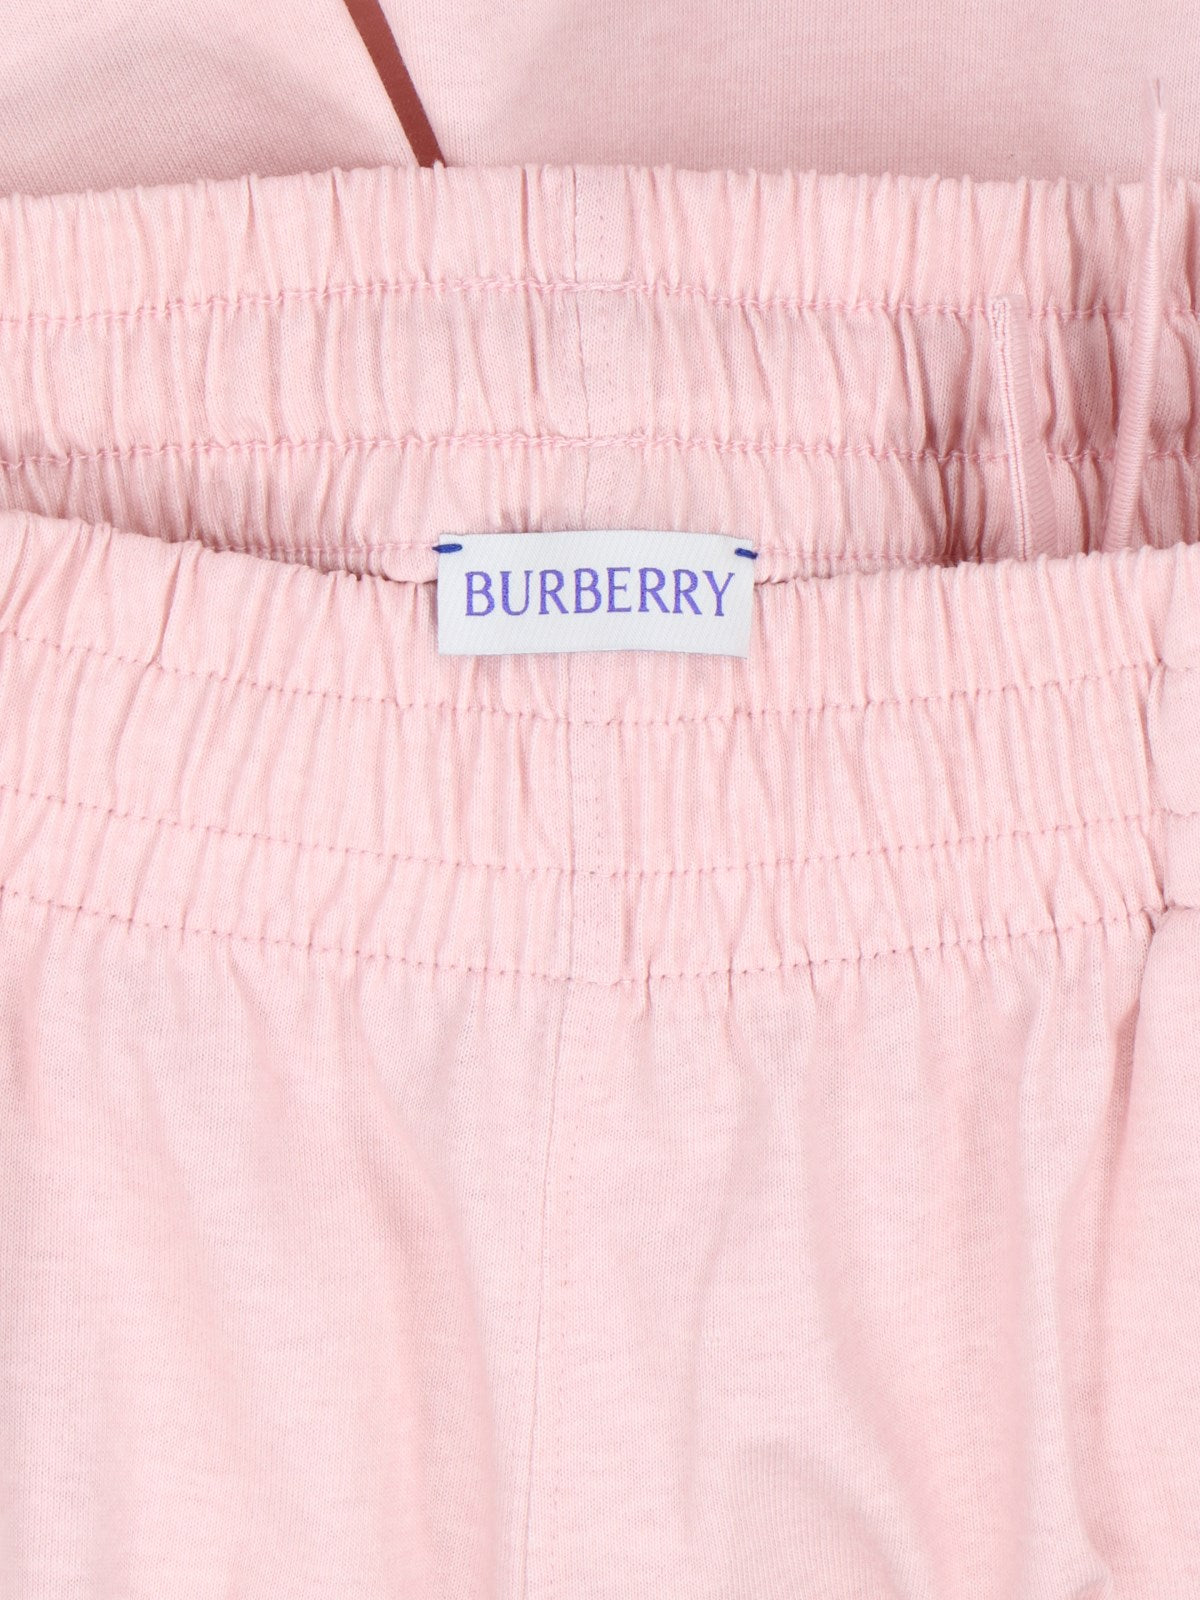 Burberry Pantaloncini Sportivi-Short-Burberry-Pantaloncini sportivi Burberry, in cotone rosa, vita elastica, coulisse, interna, due tasche laterali, una tasca retro, orlo a contrasto.-Dresso